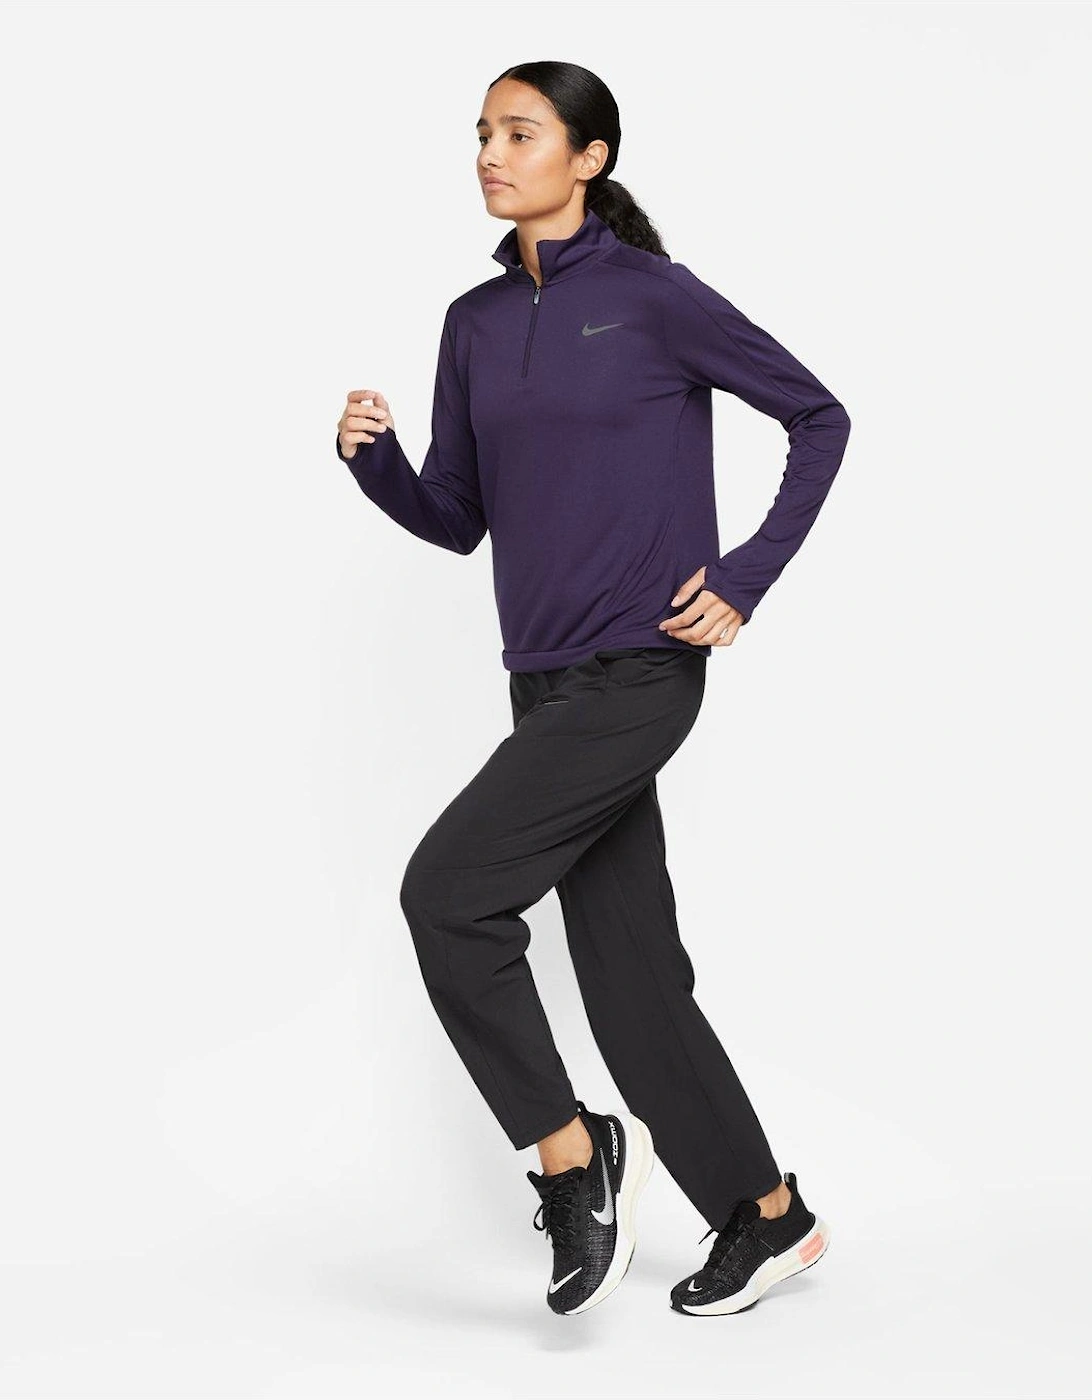 Dri-FIT Pacer Women's 1/4-Zip Pullover Top - Purple